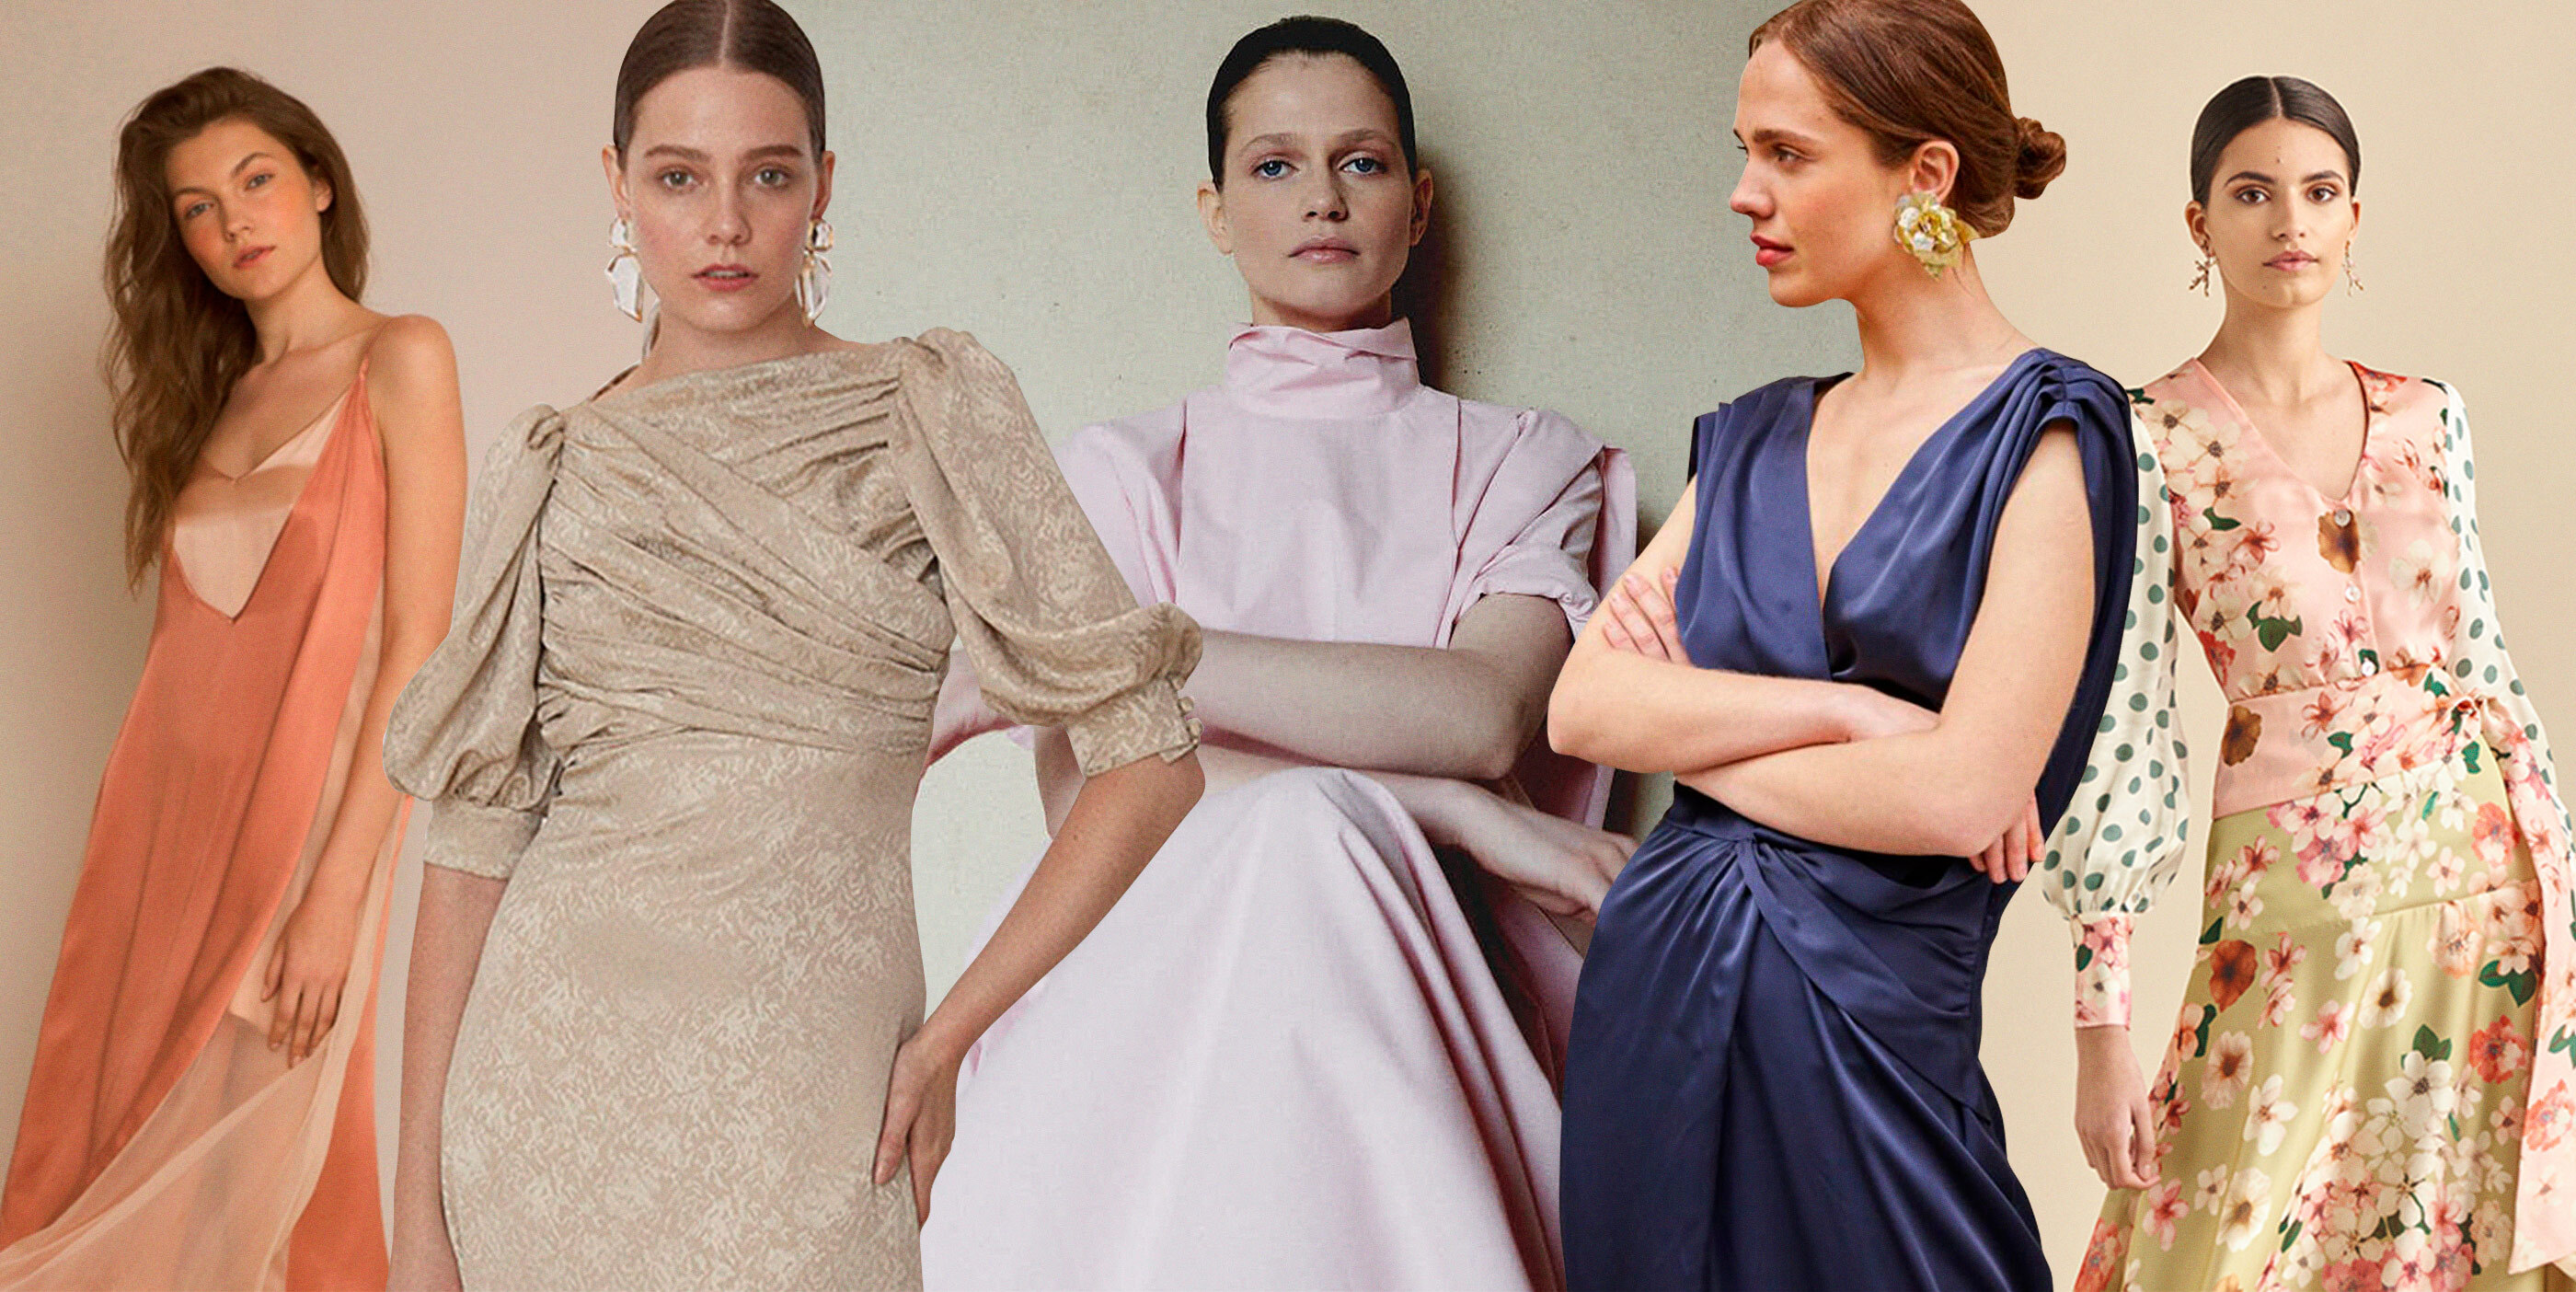 17 españolas para invitadas que no quieren toparse con otro vestido que el suyo | Moda, Shopping S Moda EL PAÍS